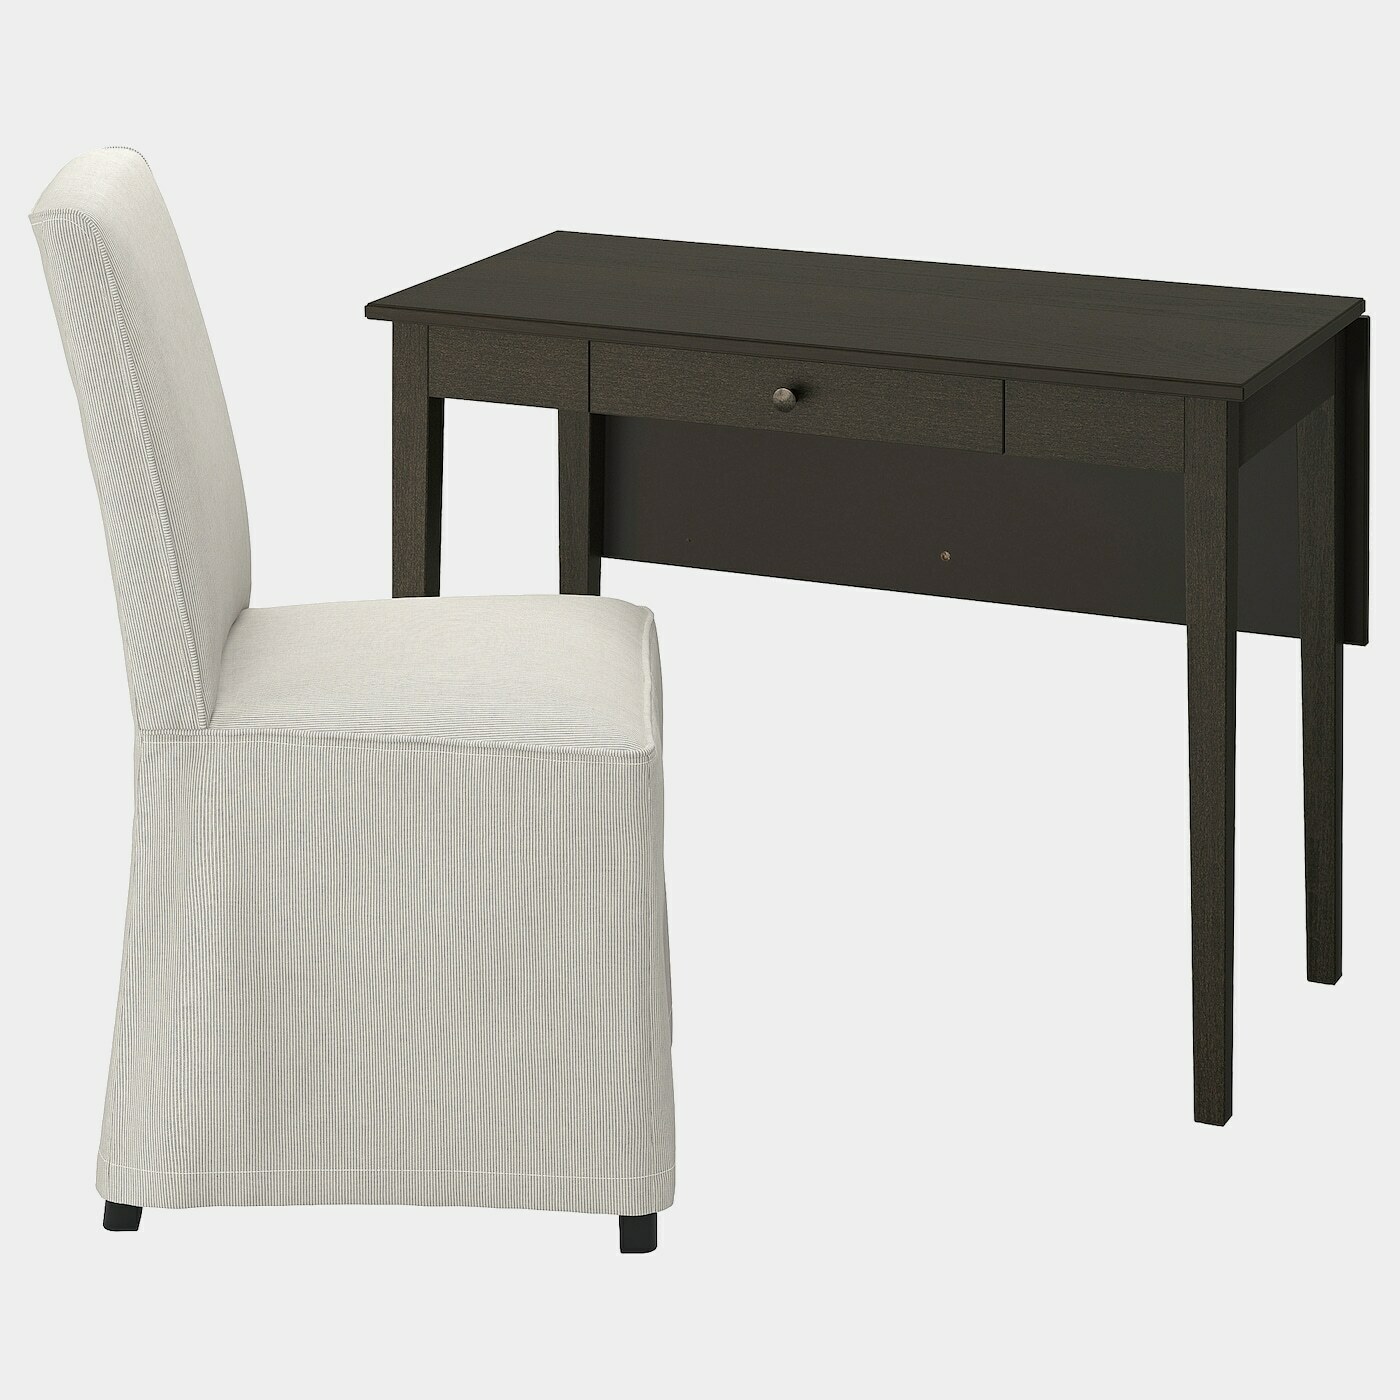 IDANÄS / BERGMUND Tisch und Stuhl  -  - Möbel Ideen für dein Zuhause von Home Trends. Möbel Trends von Social Media Influencer für dein Skandi Zuhause.